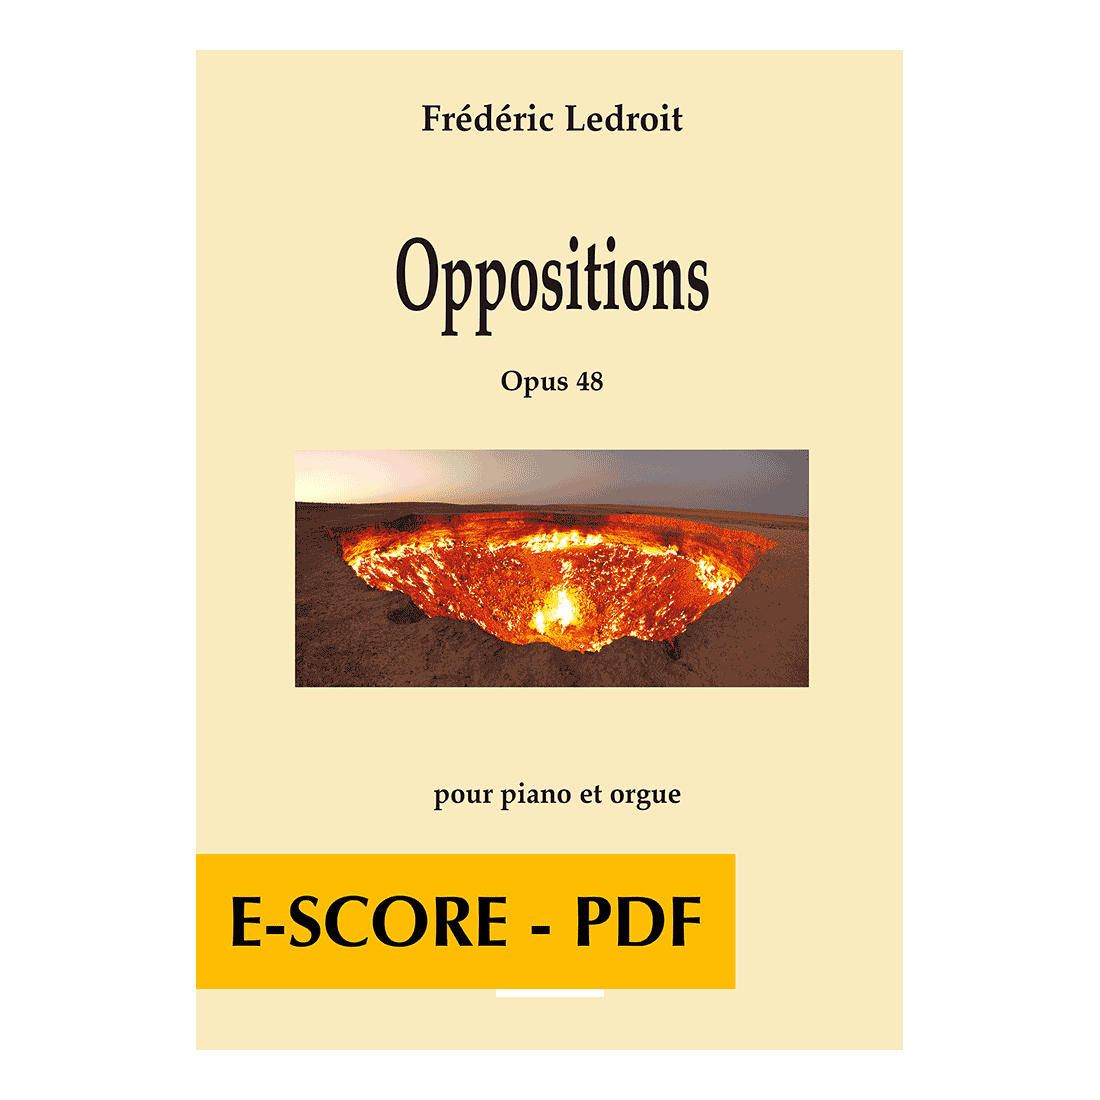 Oppositions für Klavier und Orgel - E-score PDF